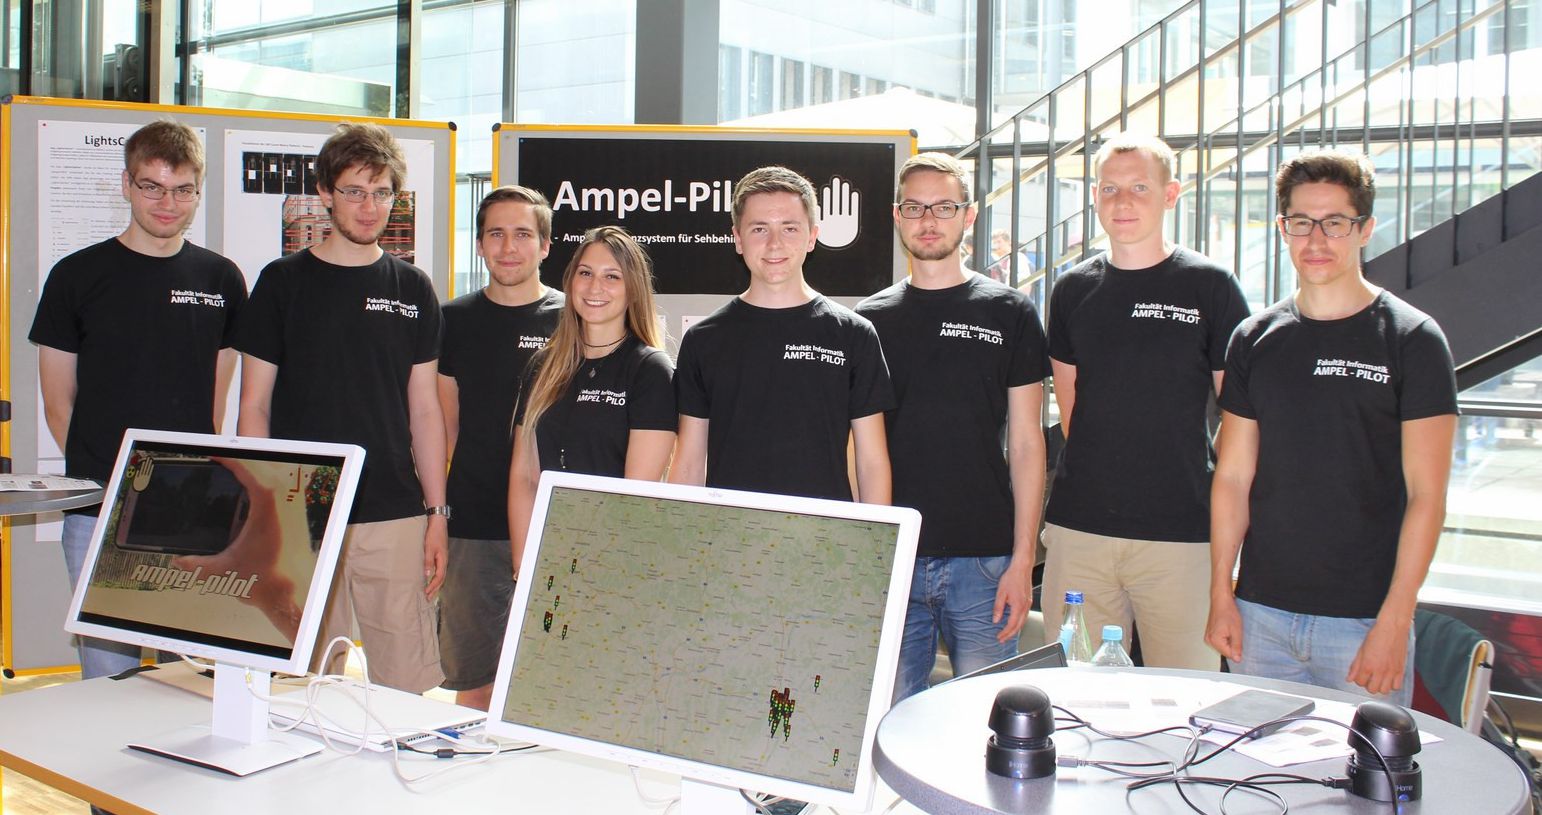 Foto der Mitglieder der Projektgruppe Ampel-Pilot der Fakultät für Informatik an der Hochschule Augsburg